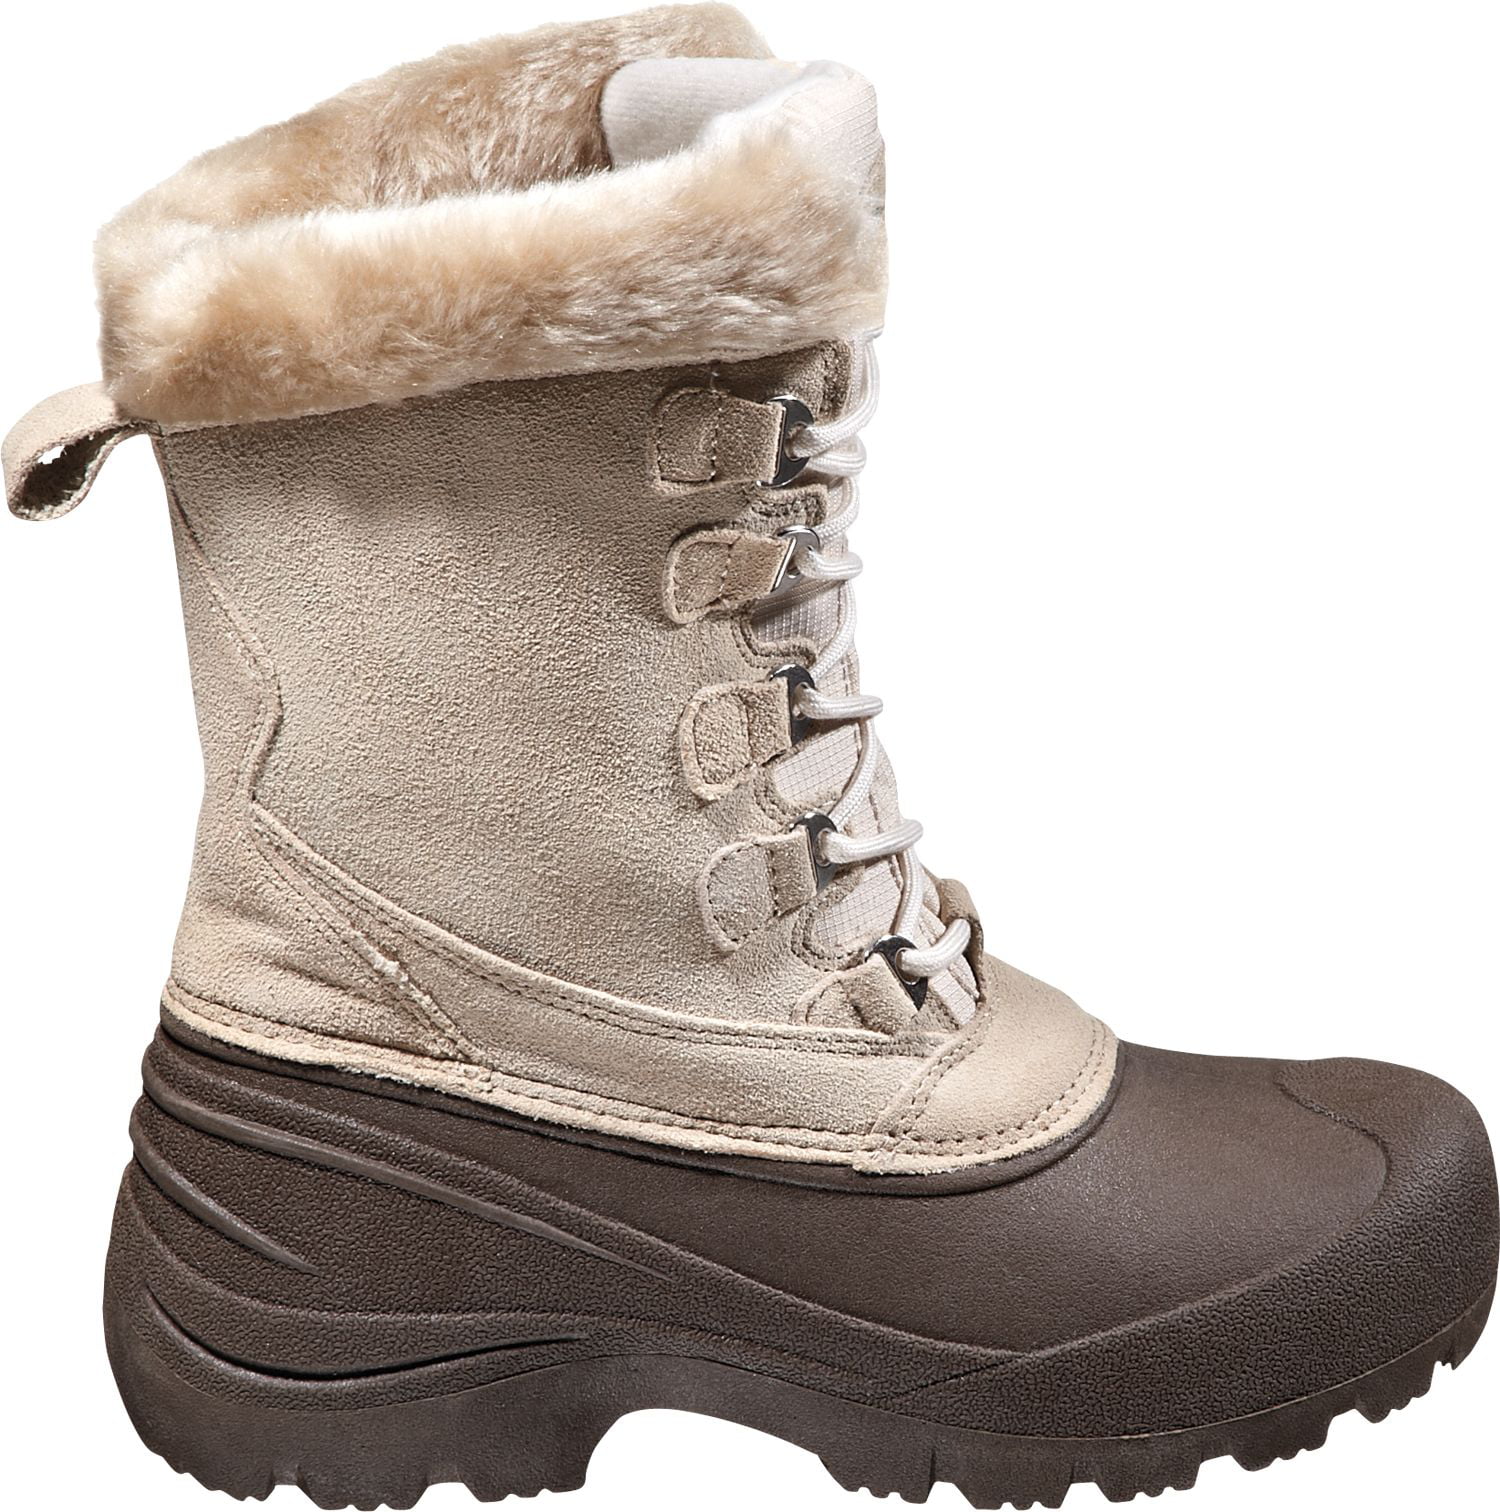 quest women's powder 200g winter boots